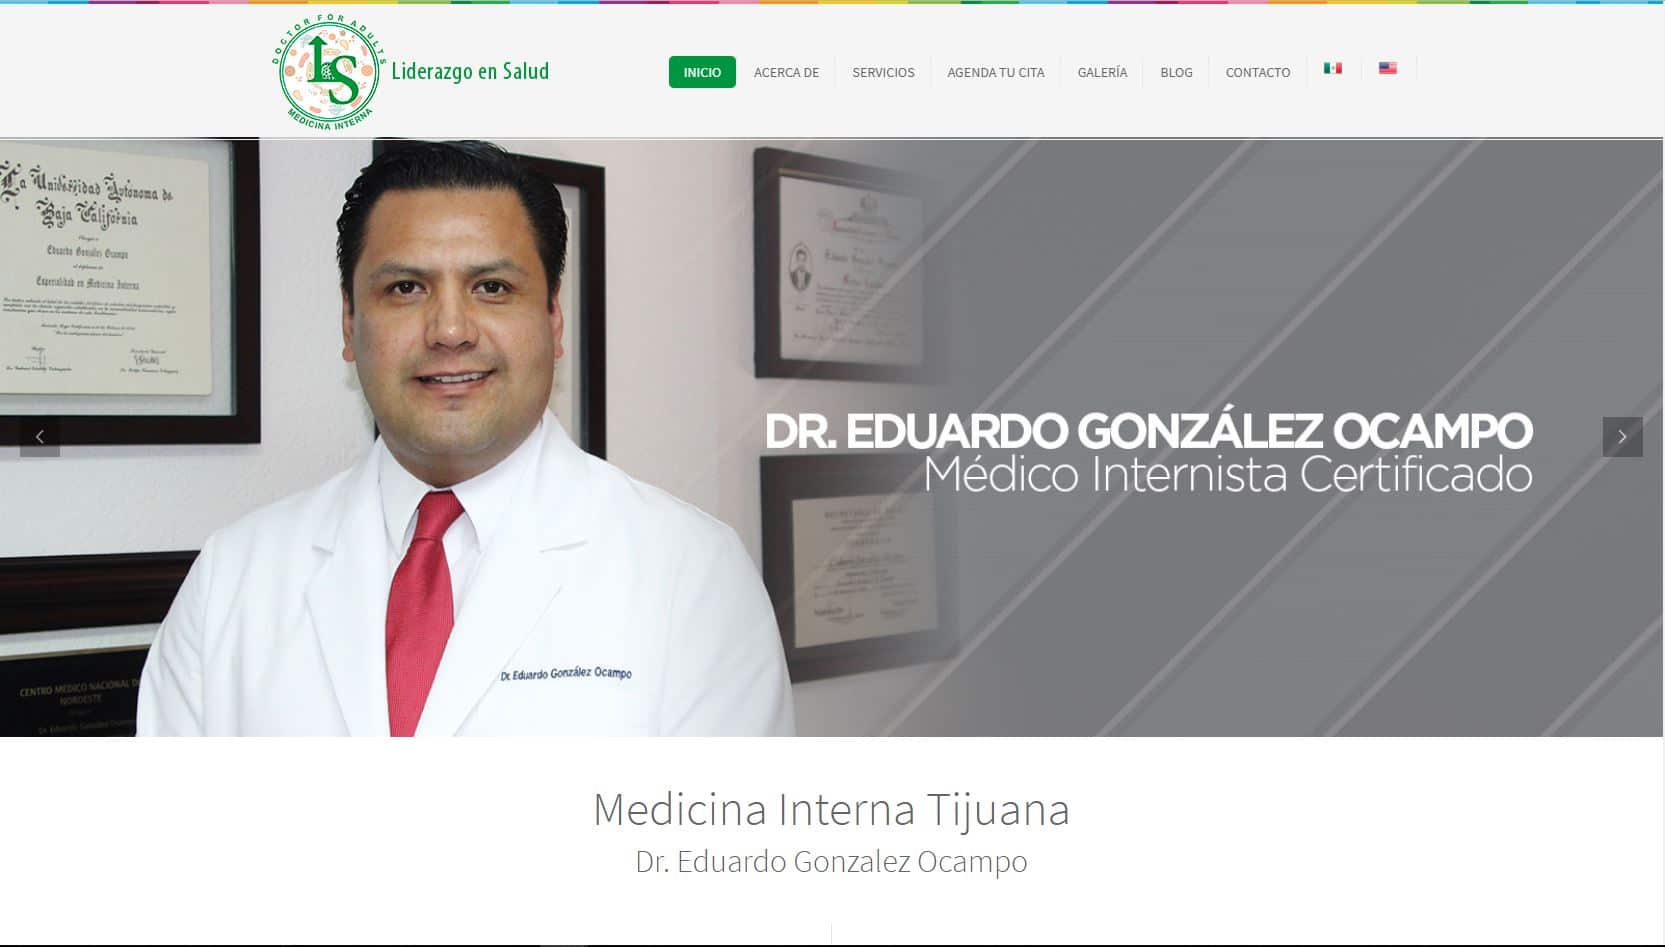 Dr. Eduardo Gonzalez Ocampo